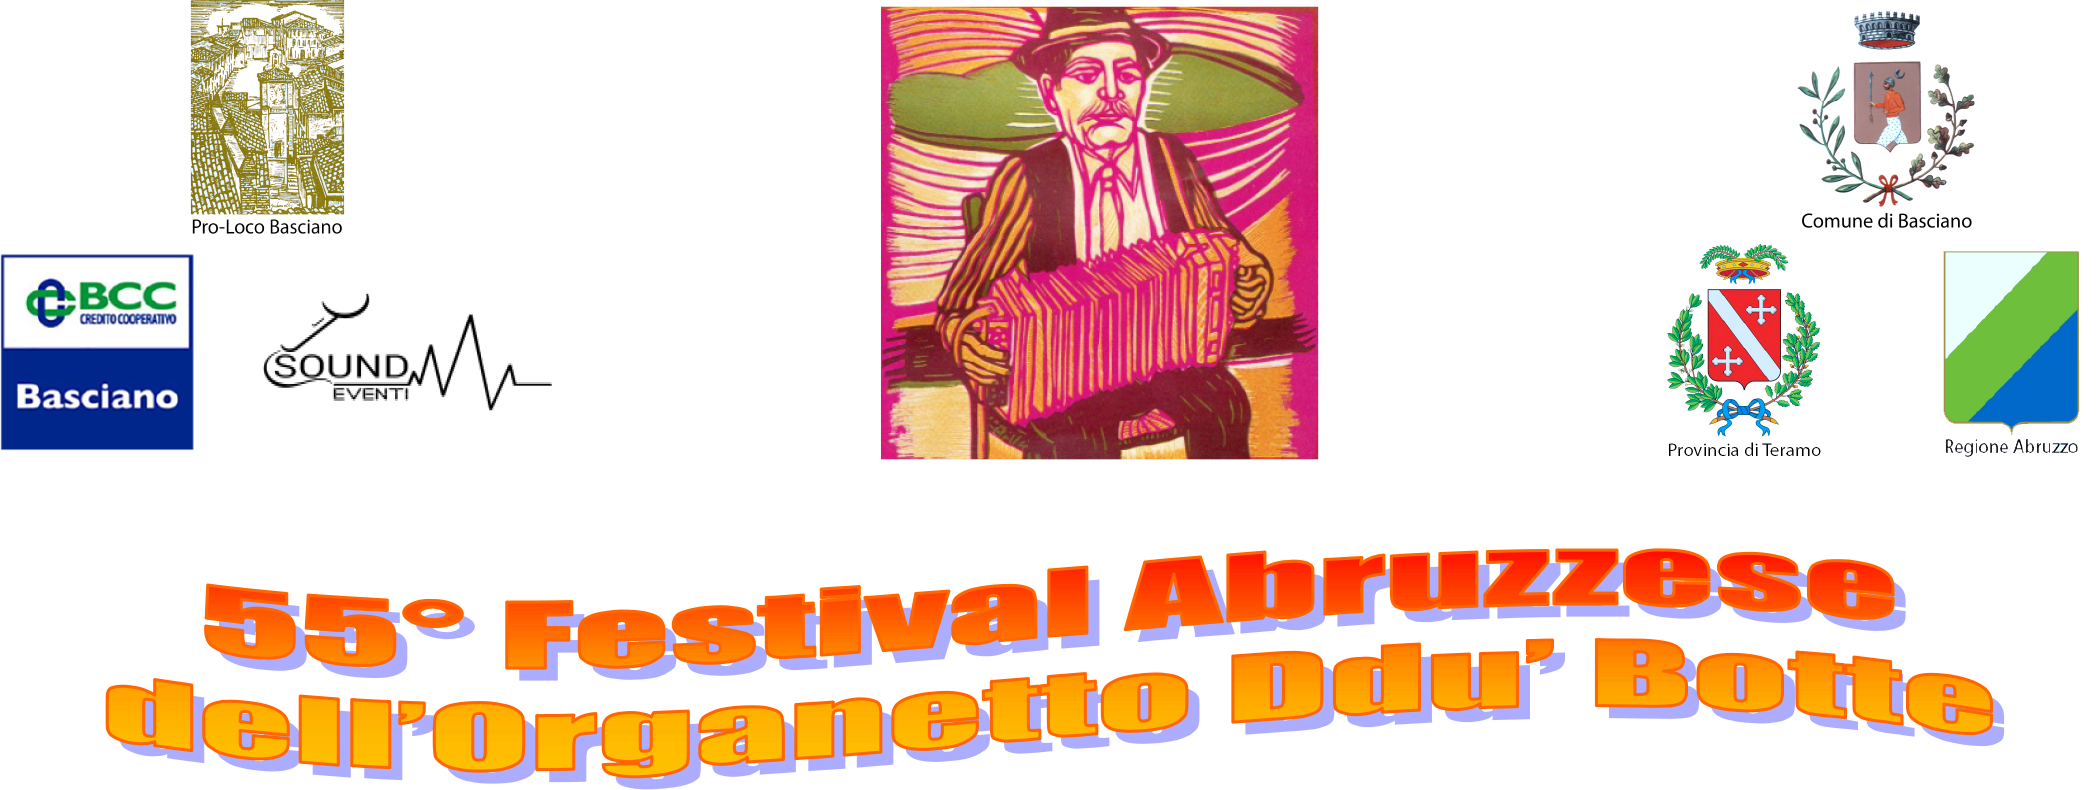 54° Festival Abruzzese Dell'Organetto Ddu' Botte di Basciano"